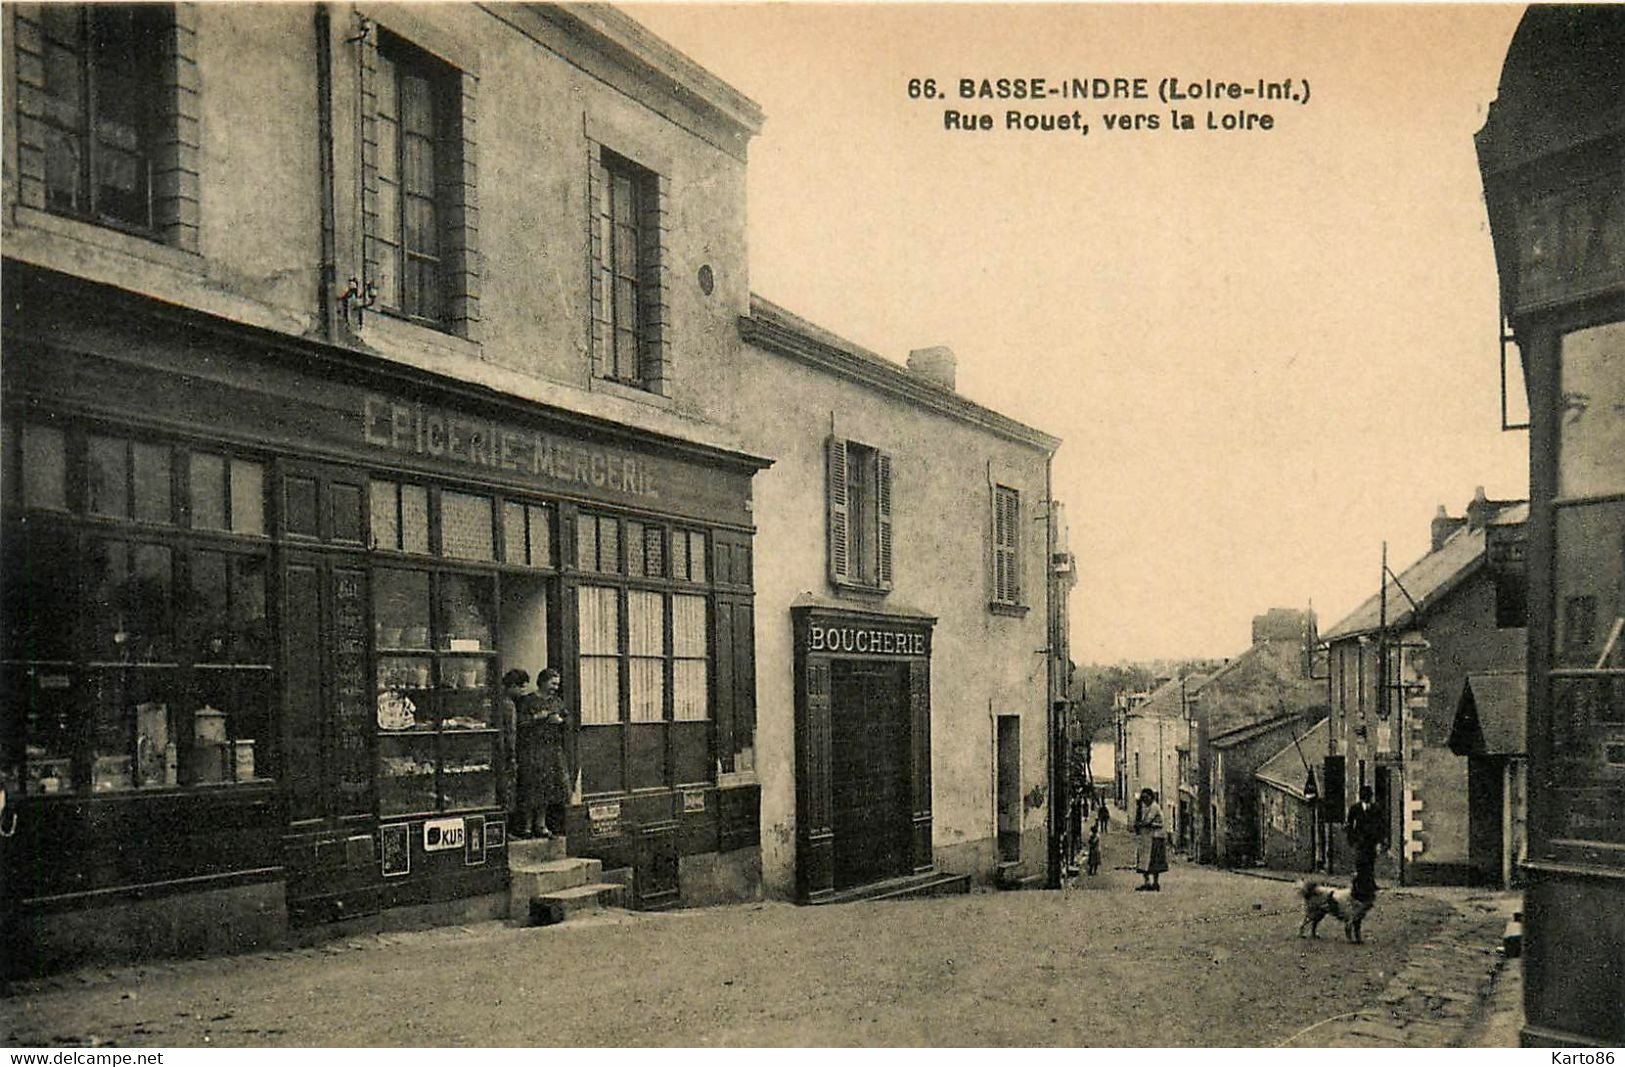 Basse Indre * Rue Rouet , Vers La Loire * Devanture épicerie Mercerie * Boucherie * Commerces Magasins - Basse-Indre